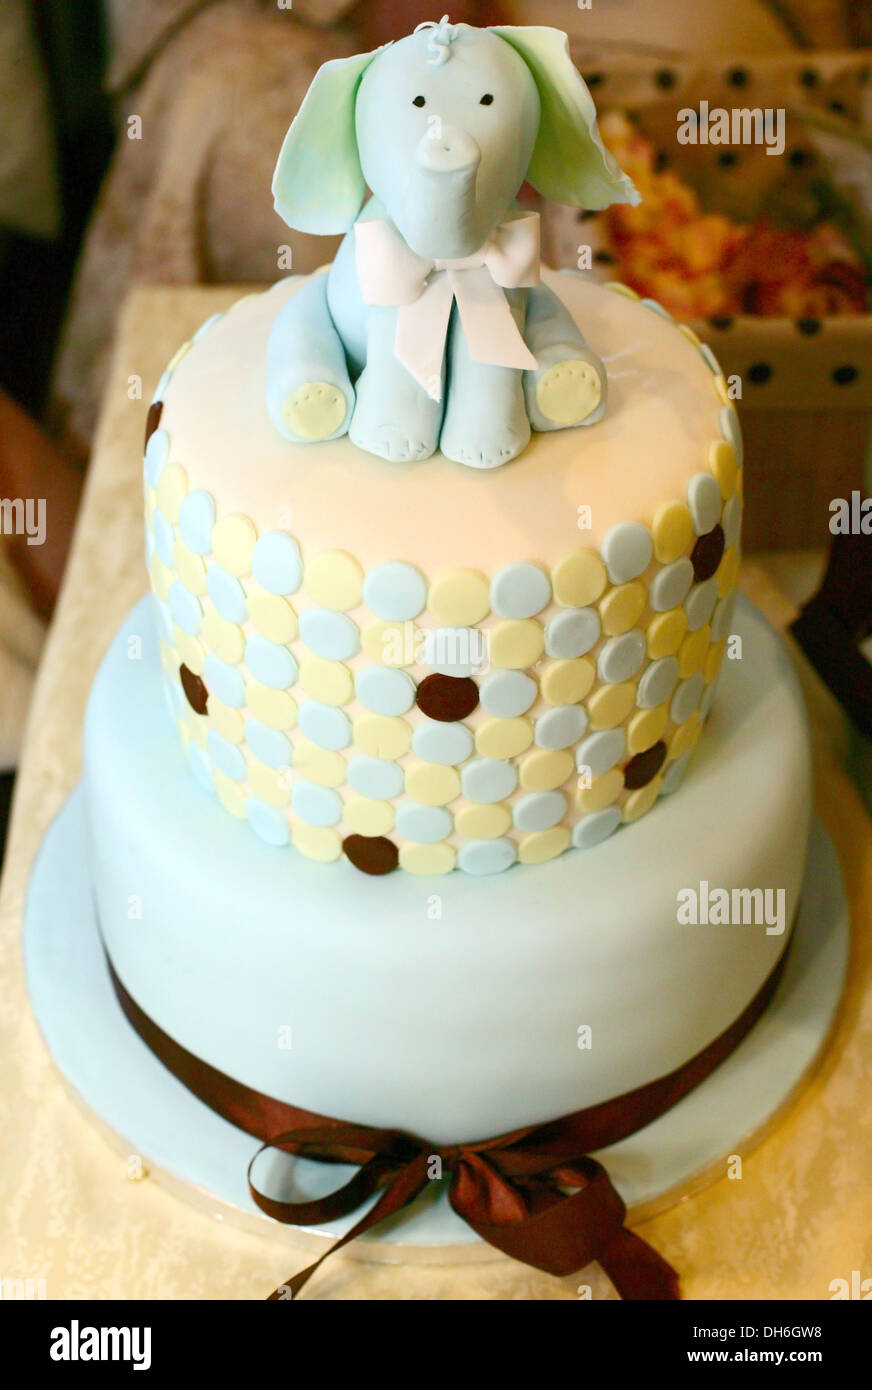 Tasty celebration cake decorated with elephant figure Stock Photo